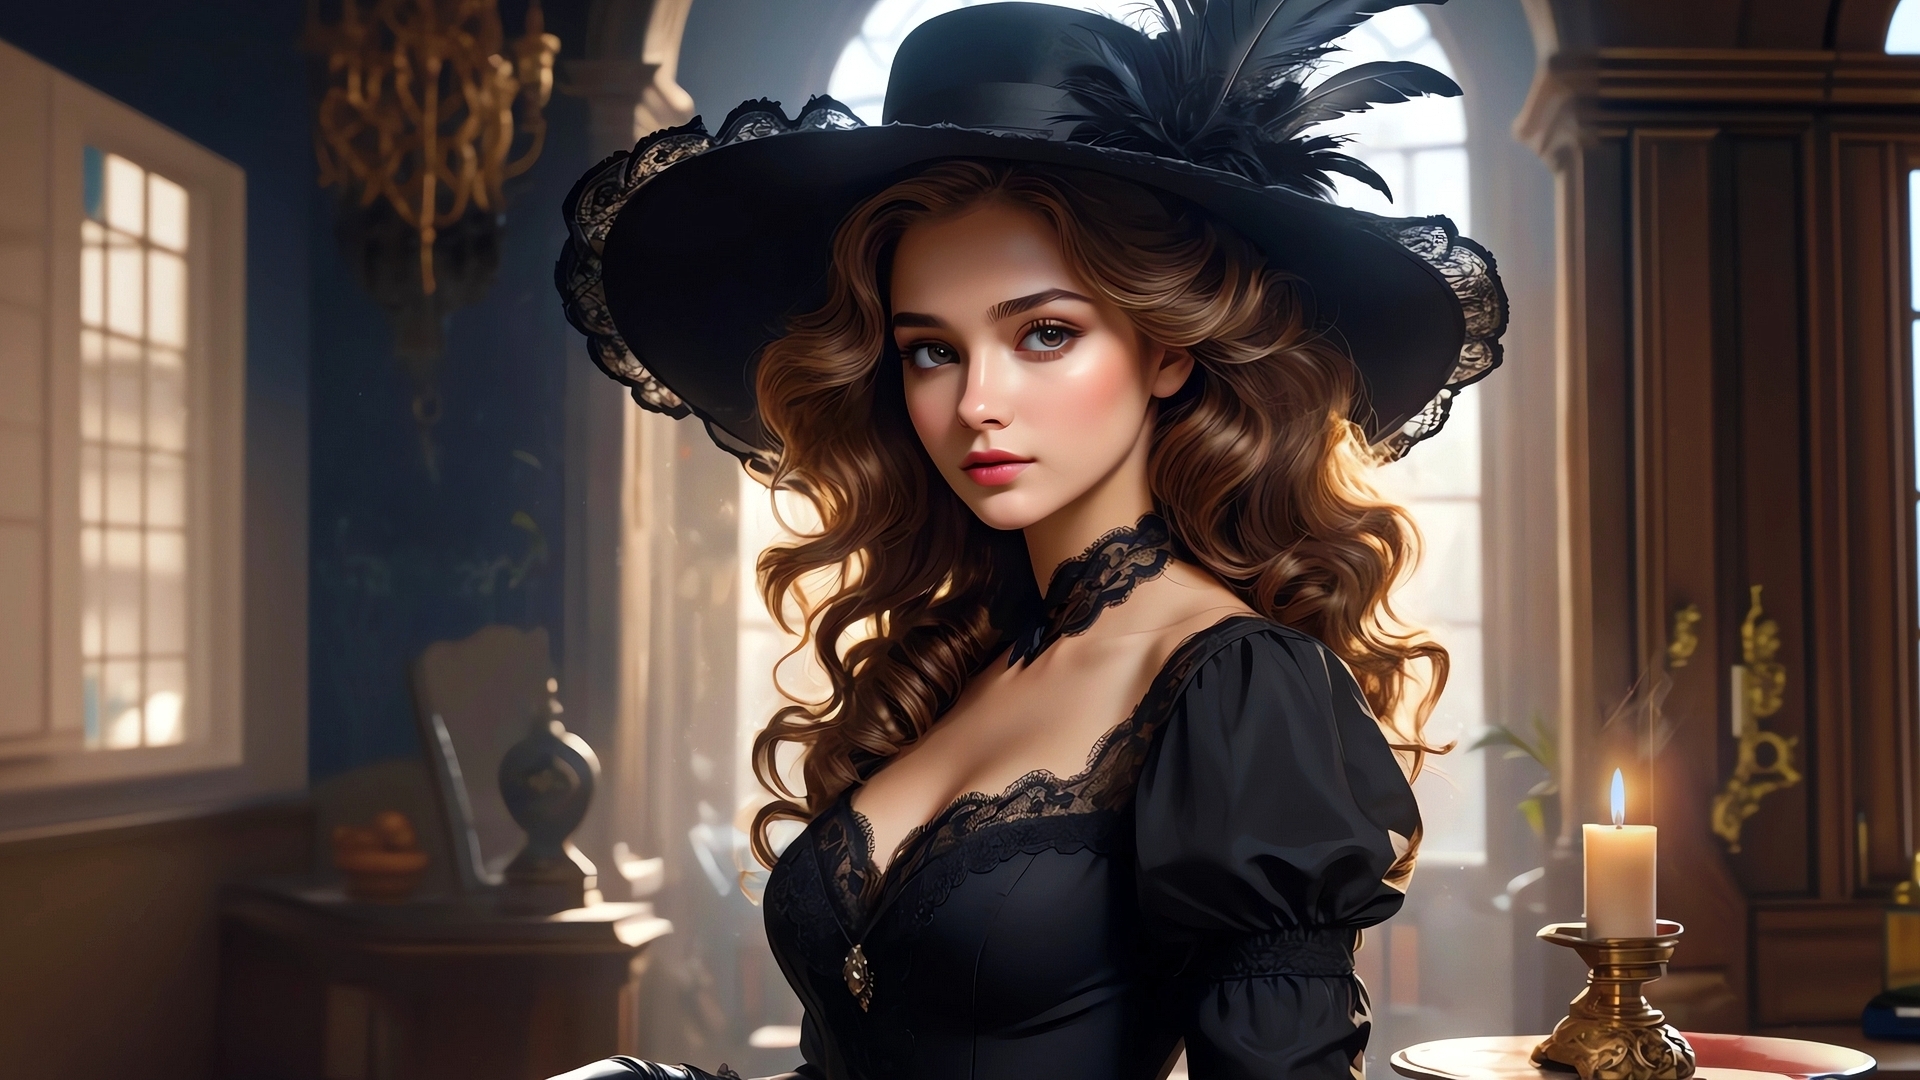 Бесплатное фото Портрет девушки в черном платье и шляпе